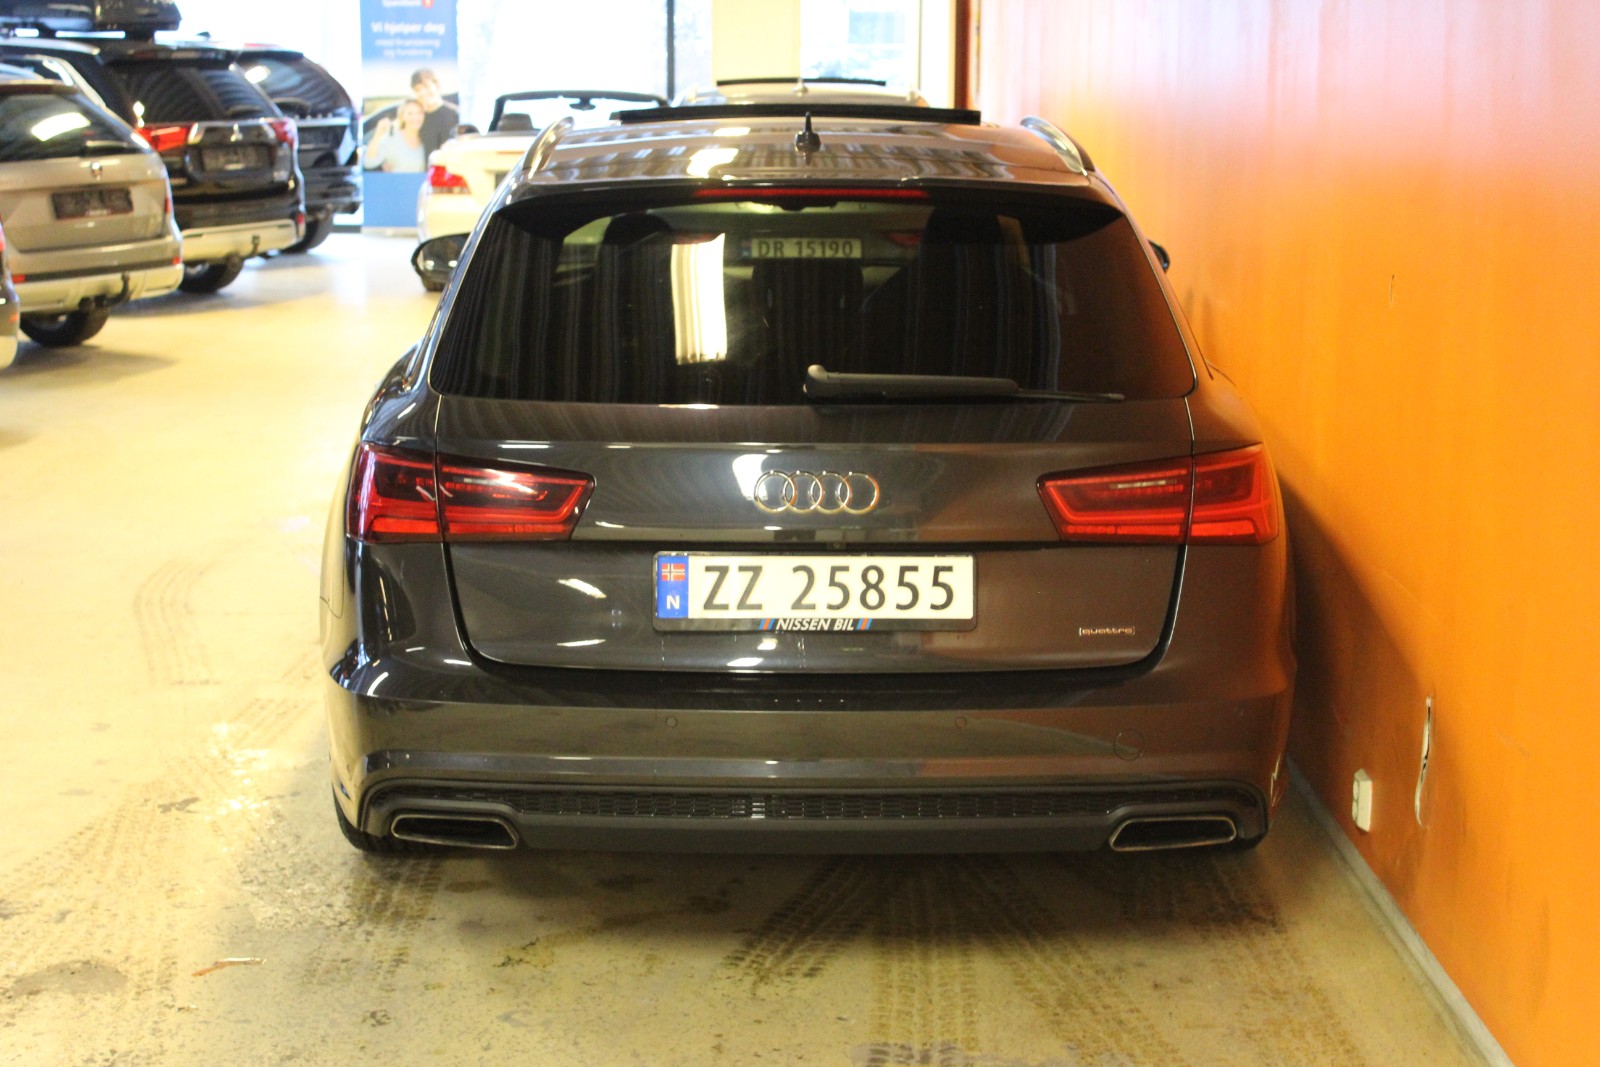 Bilde 5 av Audi A6 2015